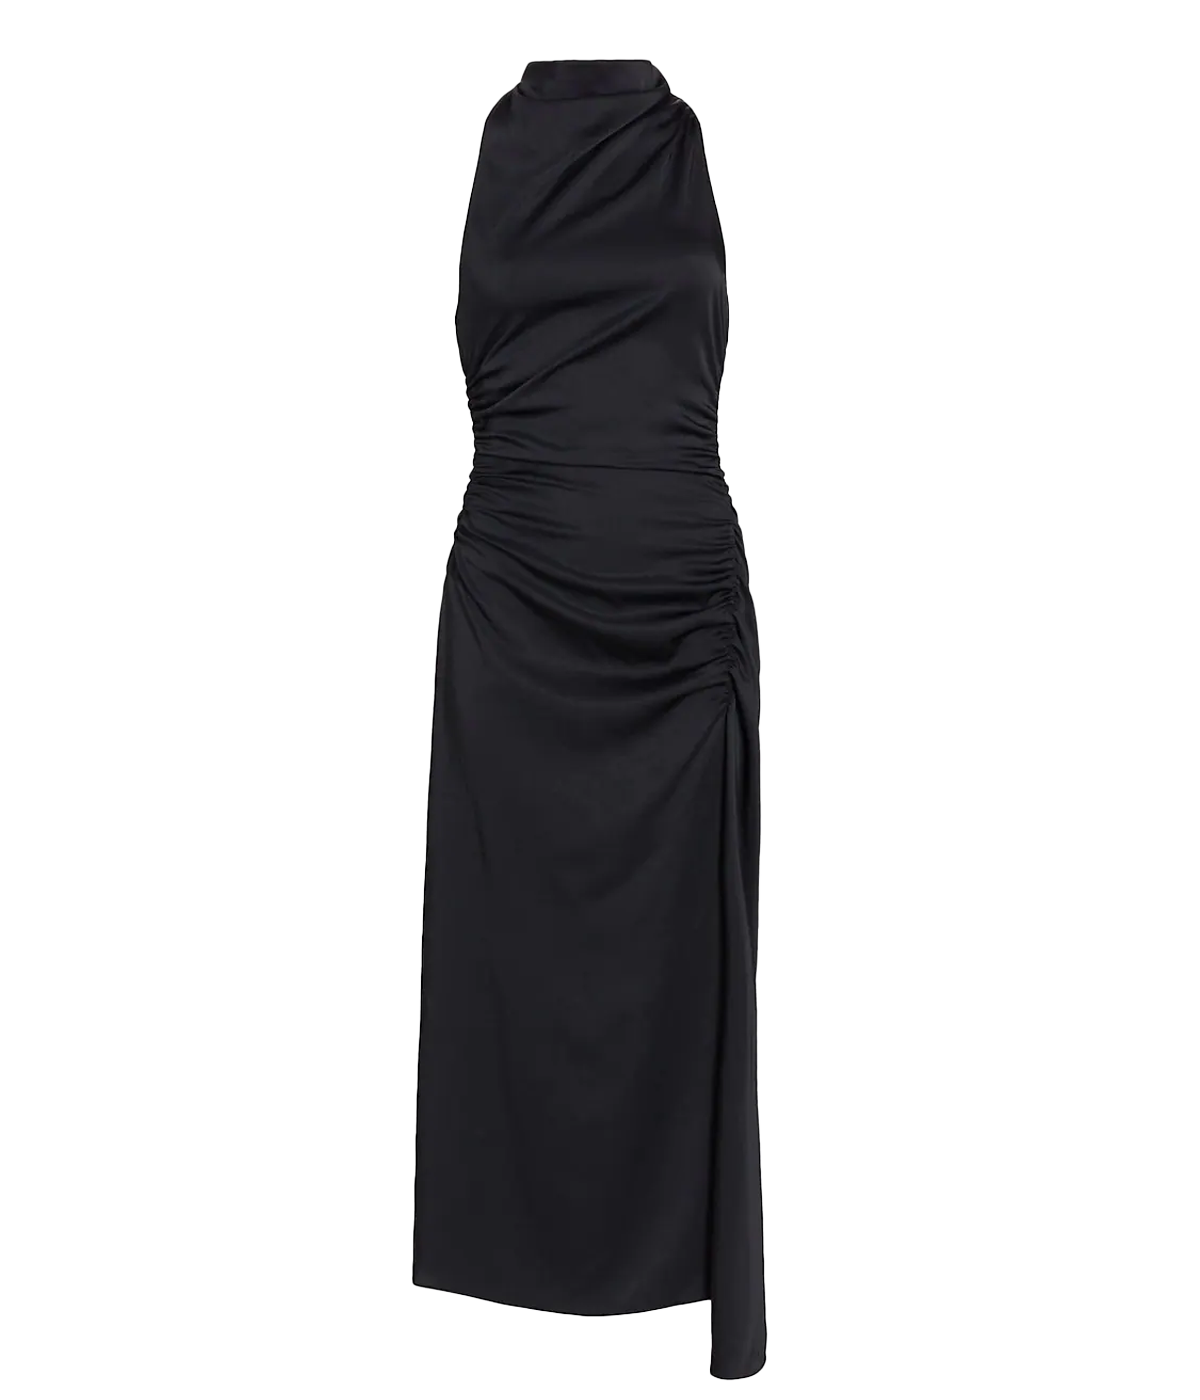 Inez Dress in Black